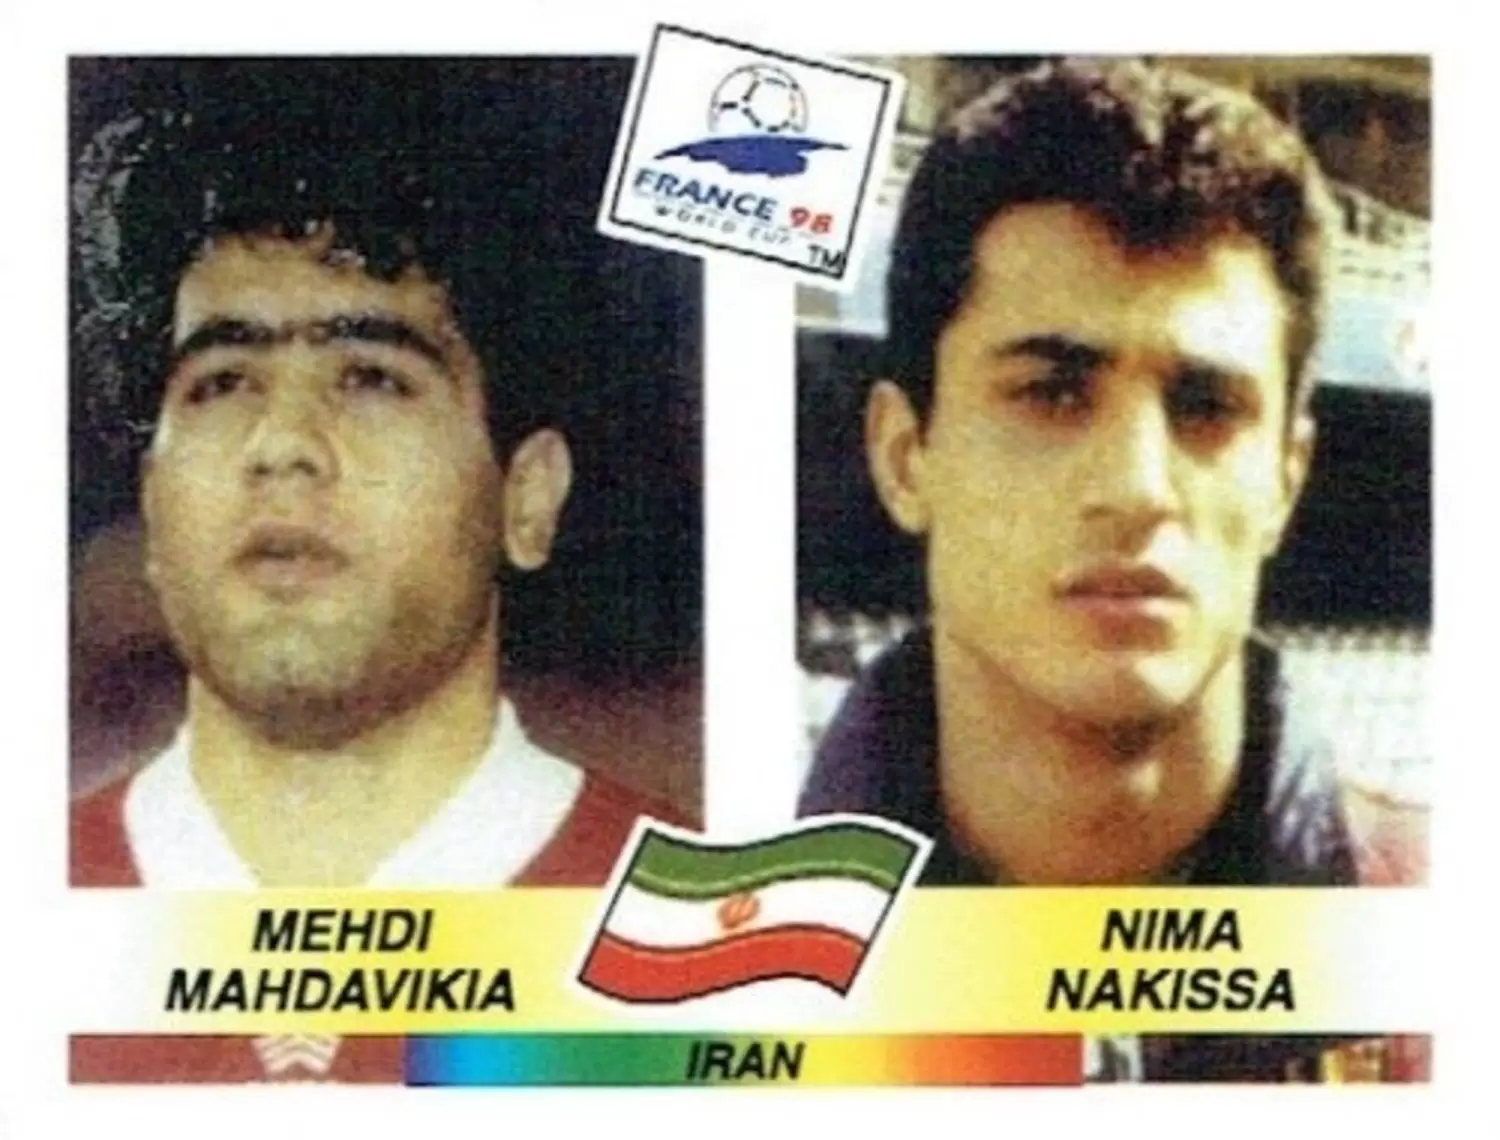 France 98 - Mehdi Mahdavikia / Nima Nakissa - IRN